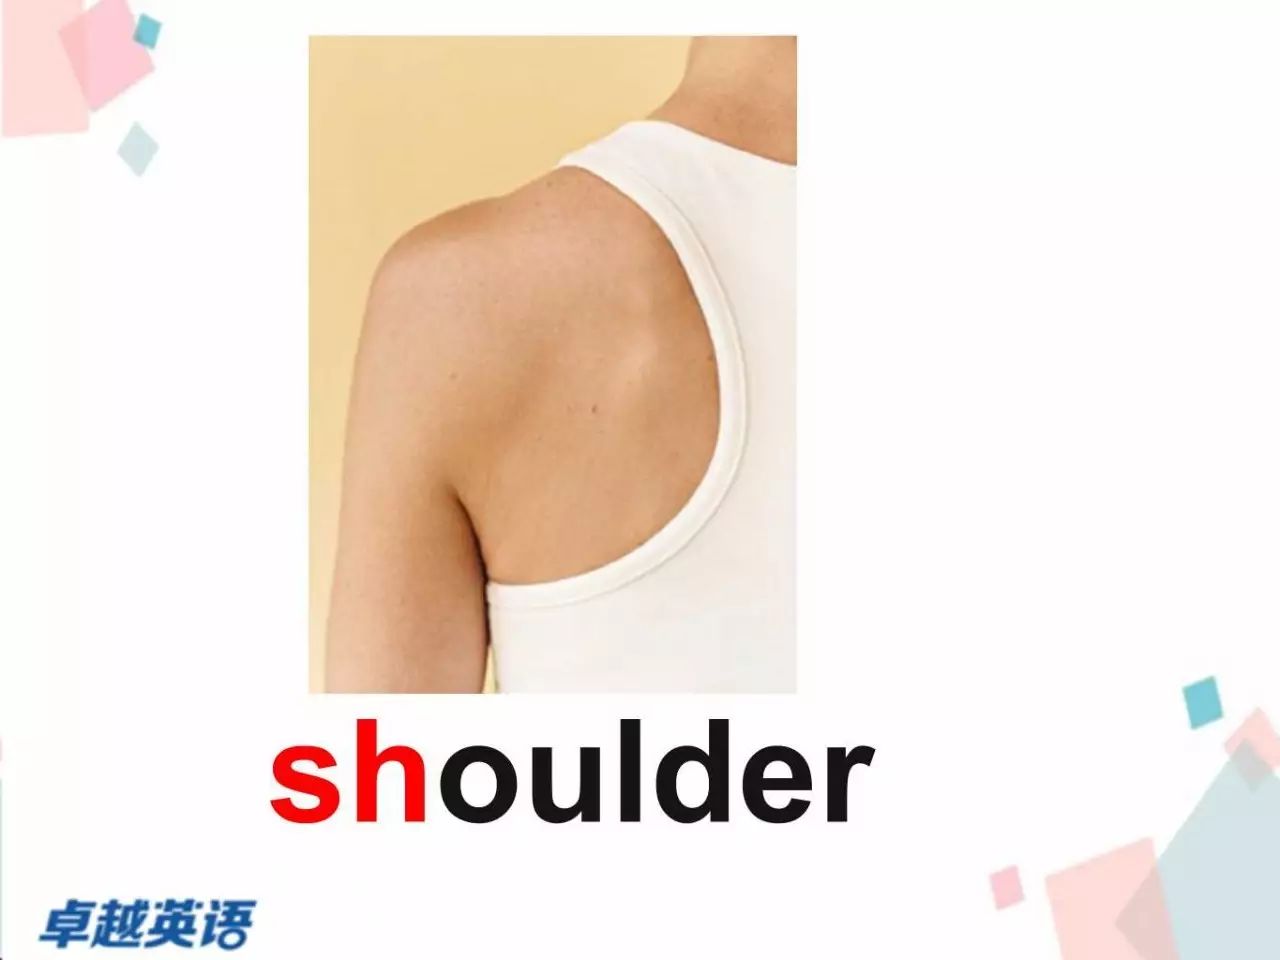 shoulder英语卡片图片